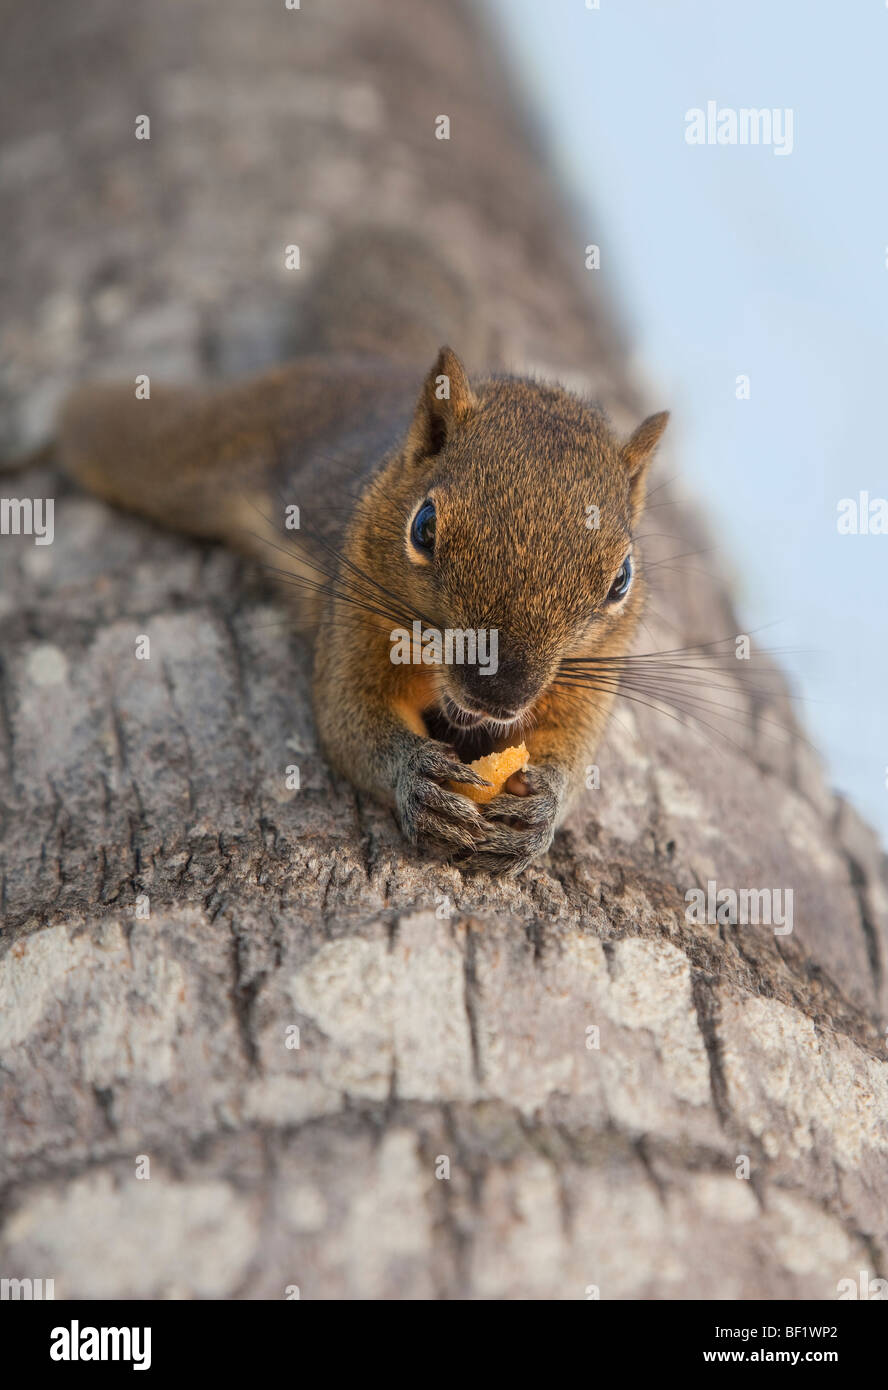 L'envers de l'Écureuil accroché à l'écorce des arbres par ses pieds, l'alimentation, Bali, Indonésie. (Peut-être un écureuil géant (Ratufa affinis) Banque D'Images